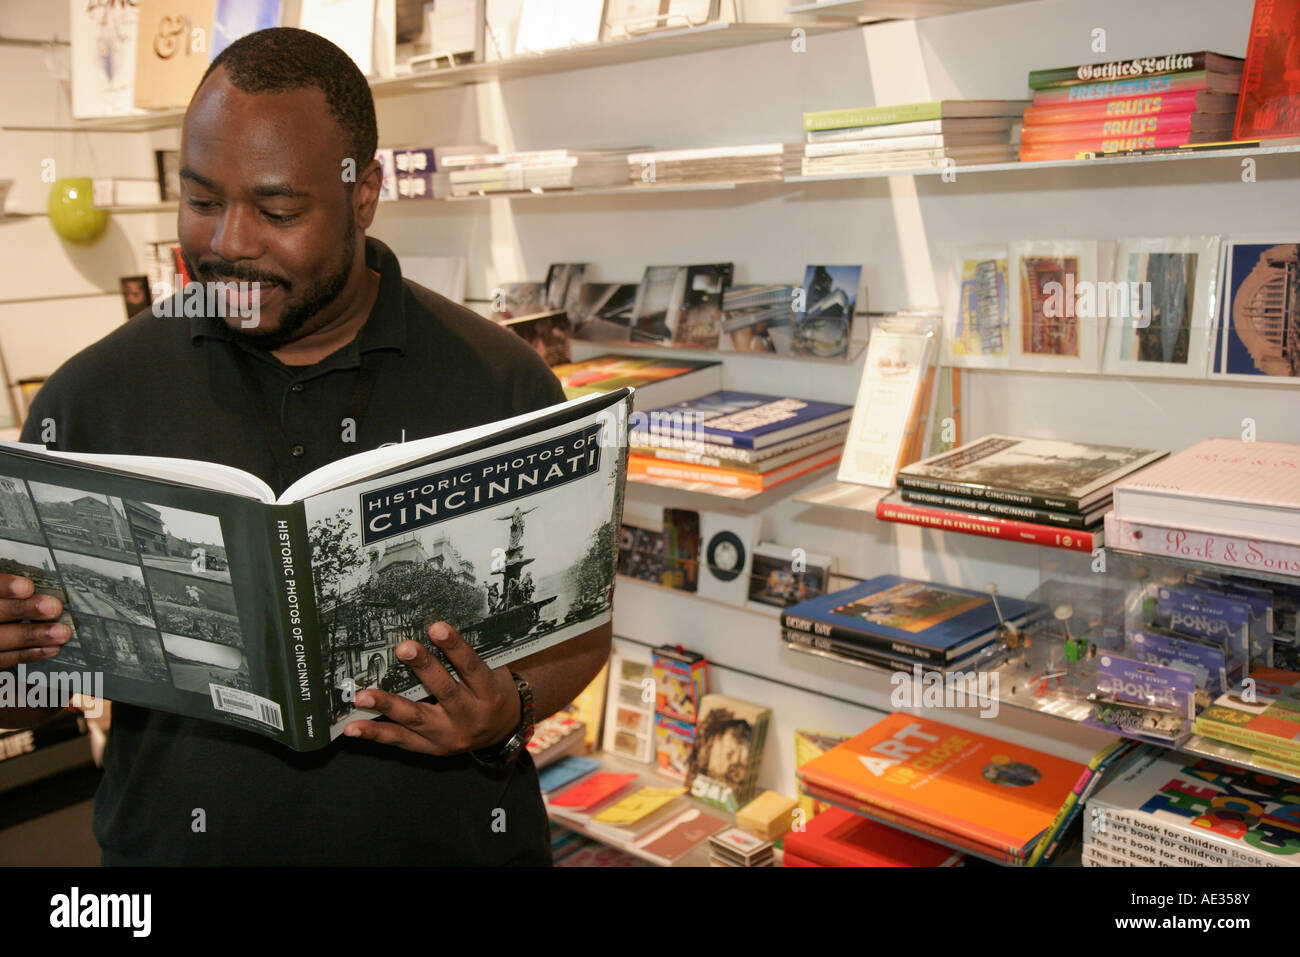 Cincinnati Ohio, Contemporary Arts Center, Zentrum, CAC-Laden, Männer mit schwarzen Männern, Bücher zum Lesen von historischen Bilderbüchern, OH070726035 Stockfoto